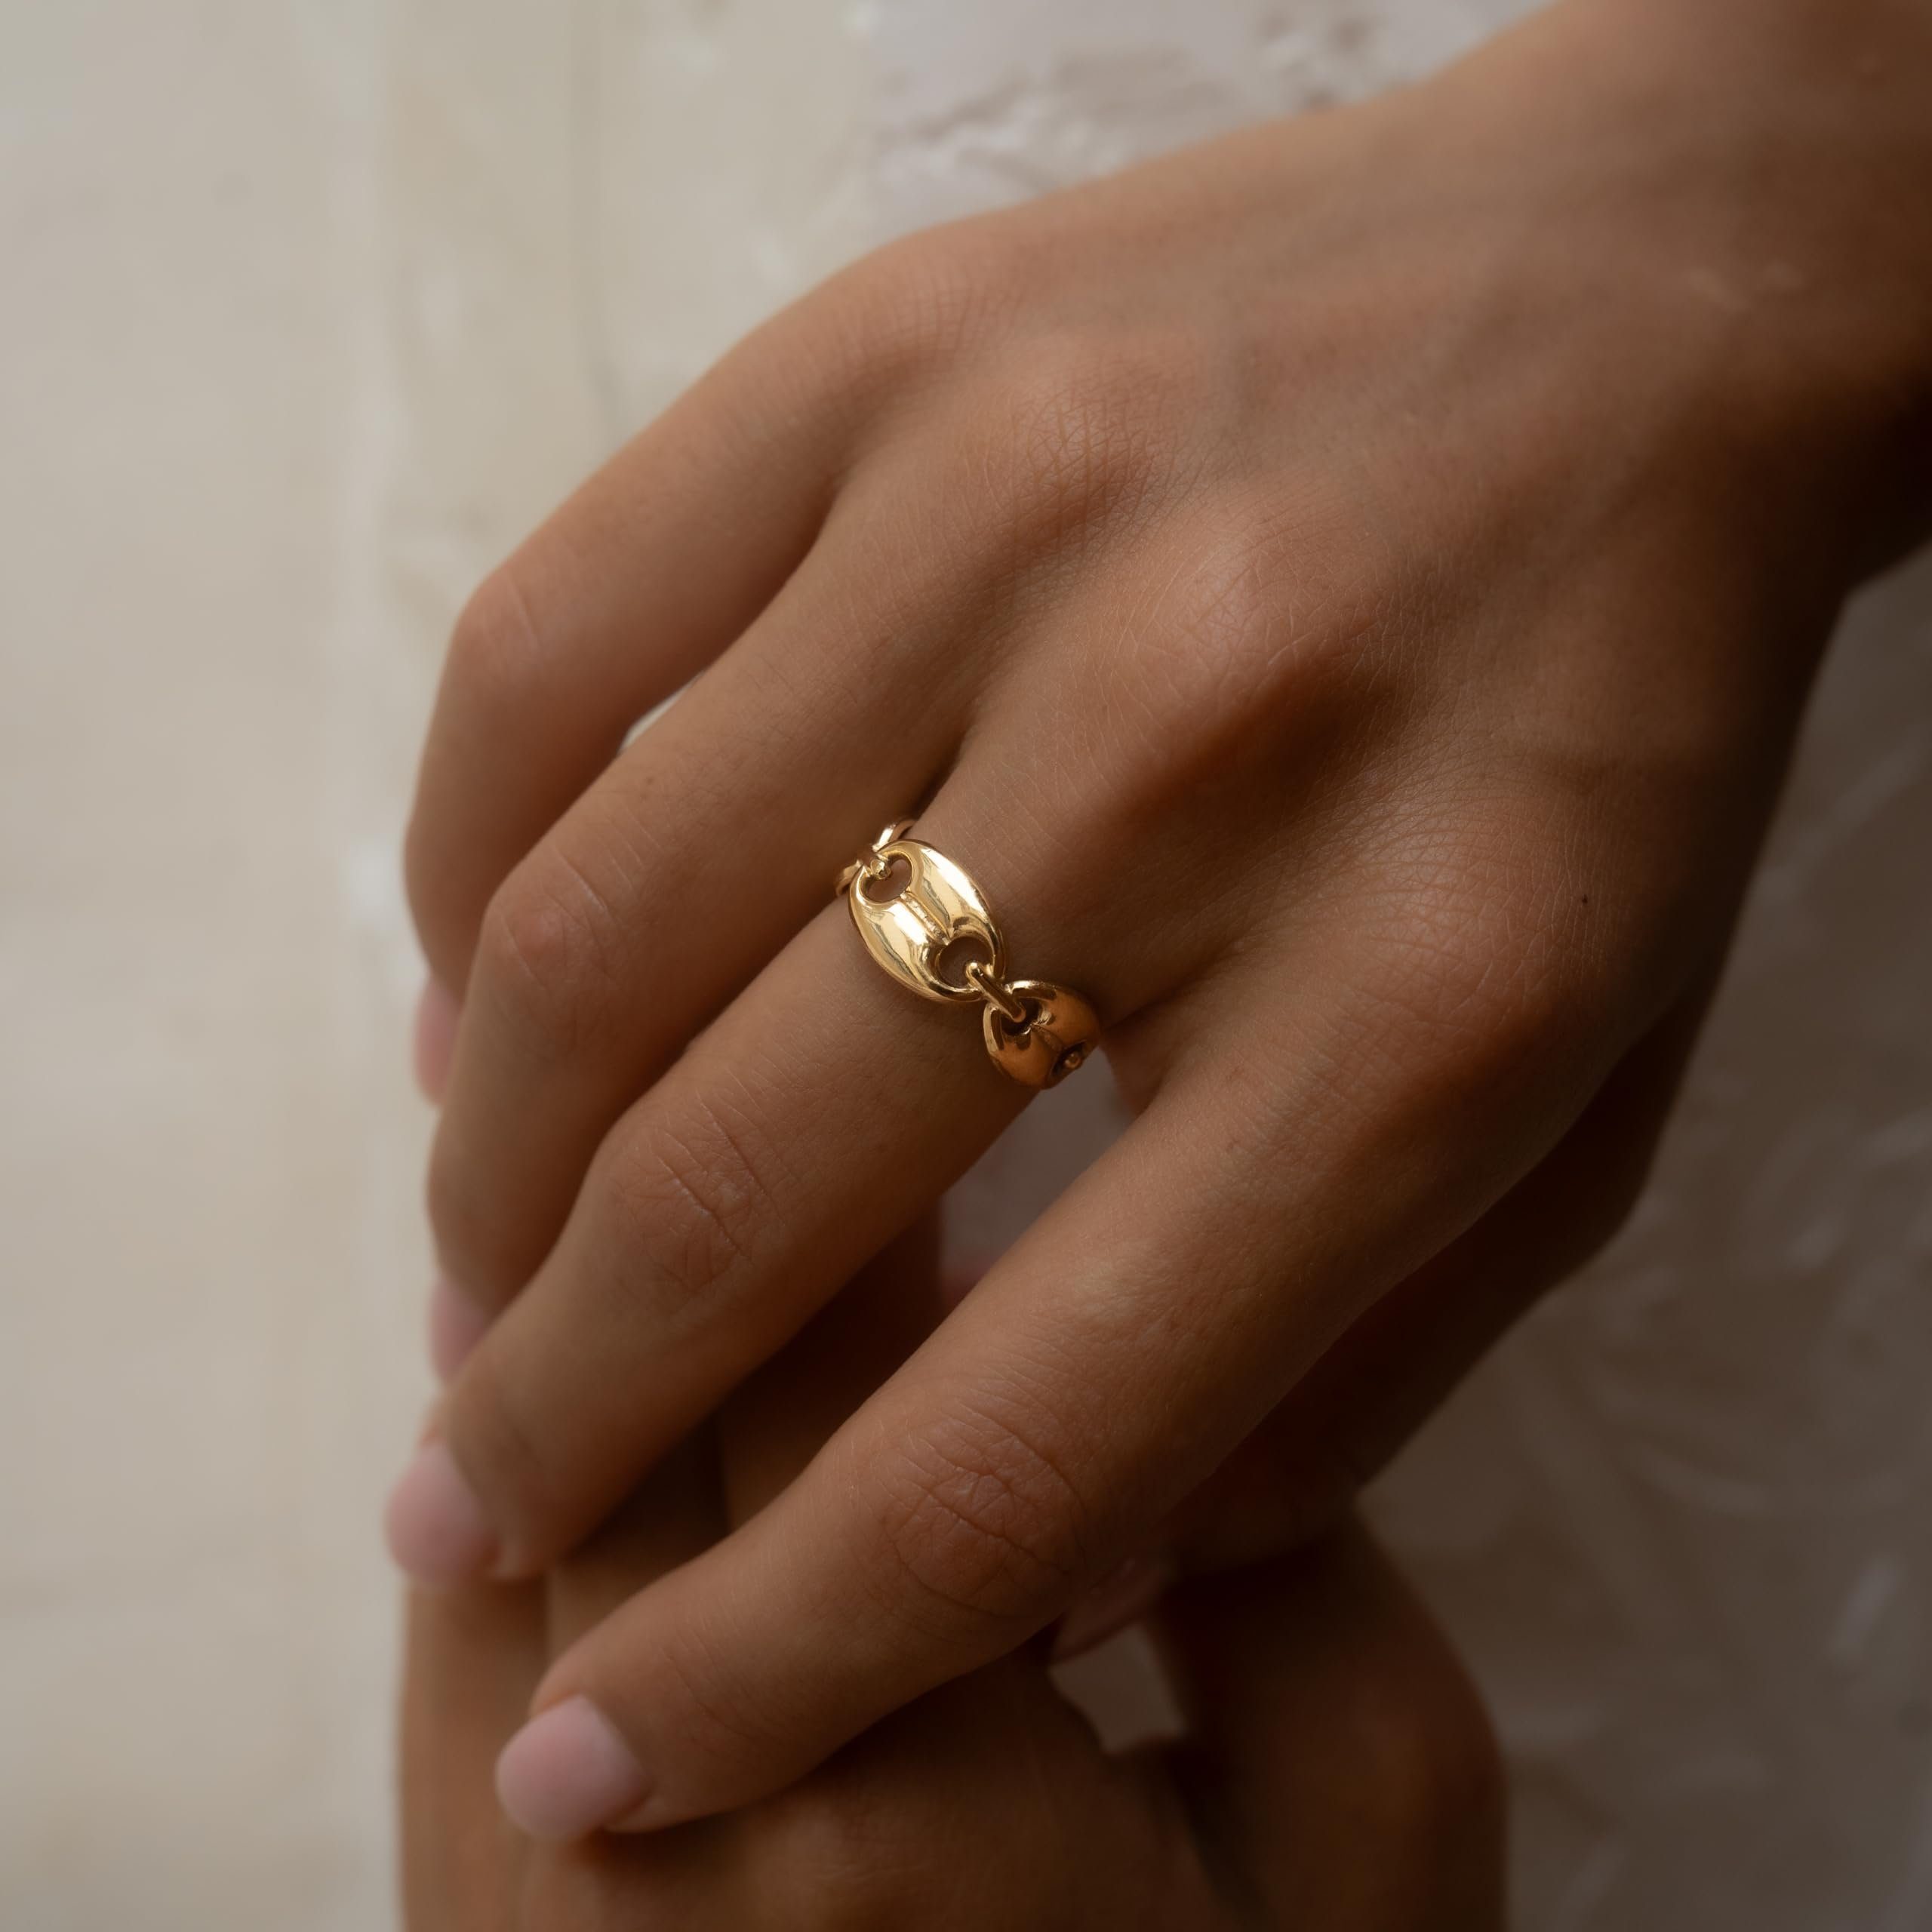 Made by Nami Fingerring Edelstahl Ring Gold mit mehreren verbundenen Gliedern, Damen Ювелірні вироби Größenverstellbar & Wasserfest